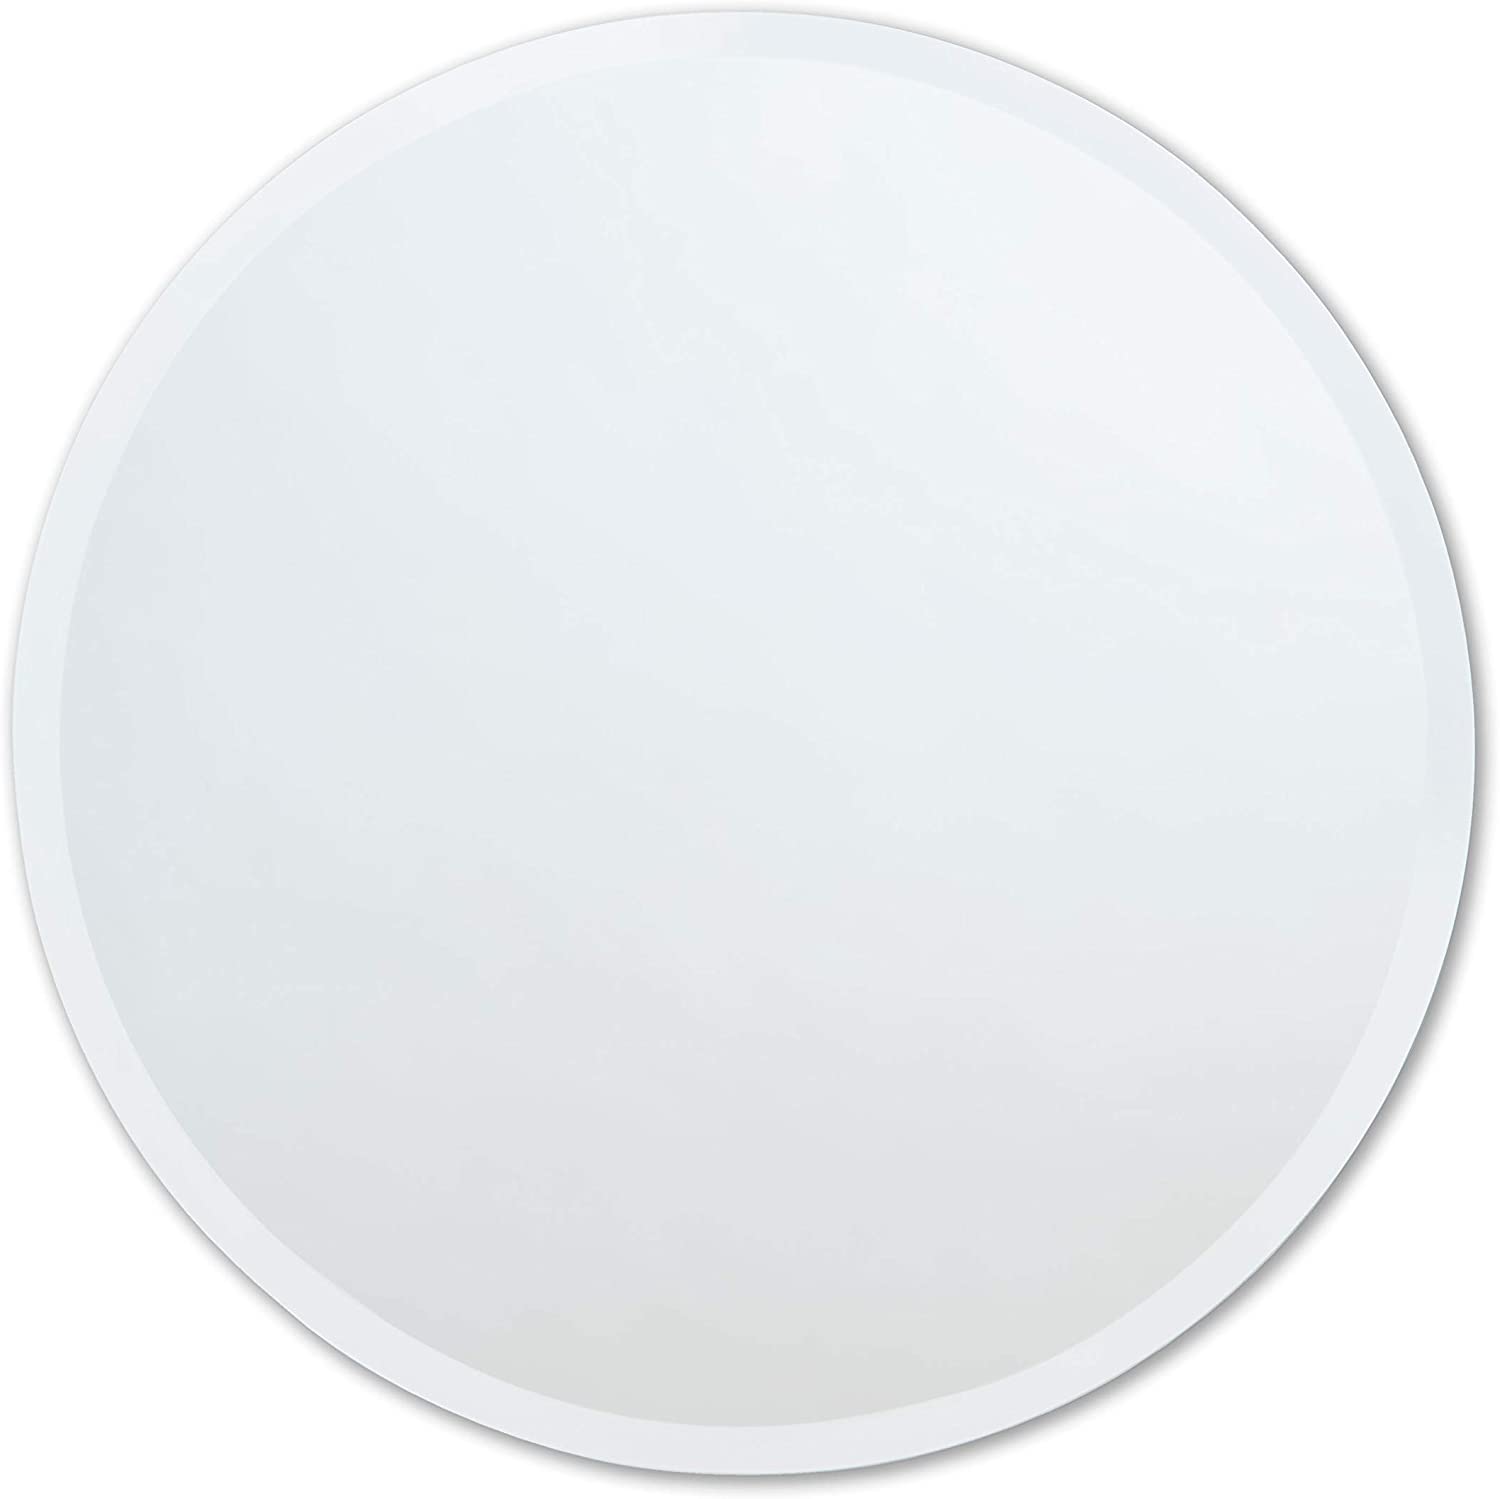 round mirror with white frame